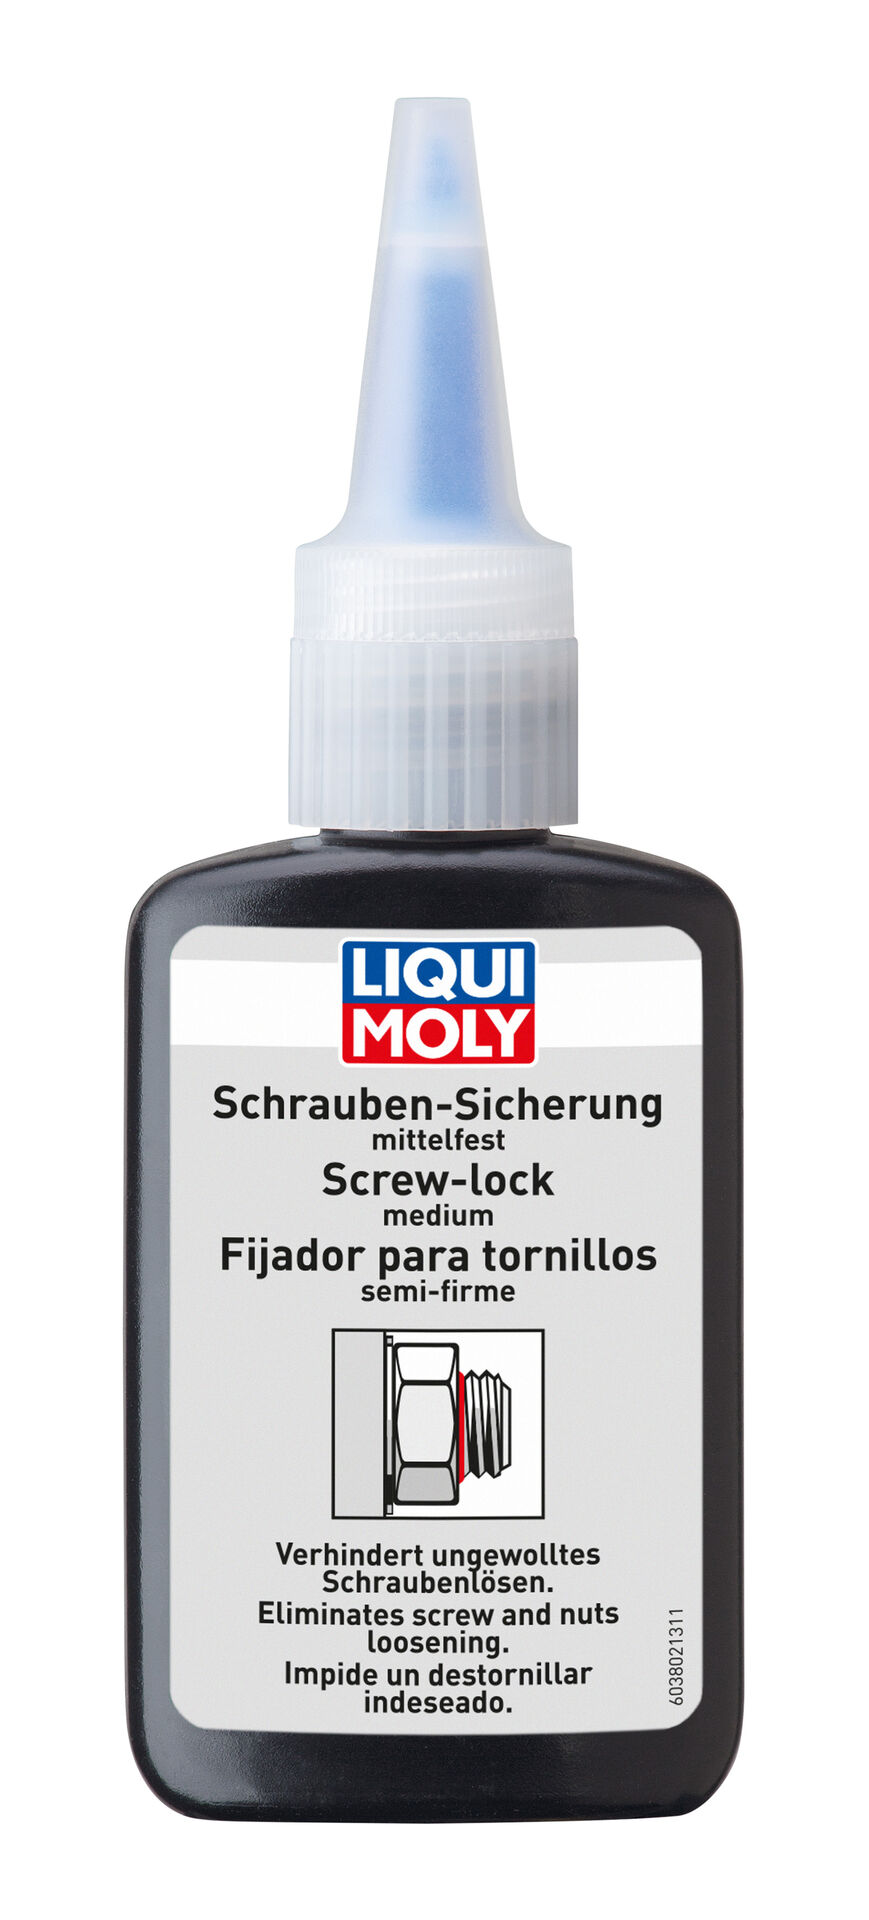 Liqui Moly Schrauben-Sicherung mittelfest Scherungslack Schraubenkleber 50g